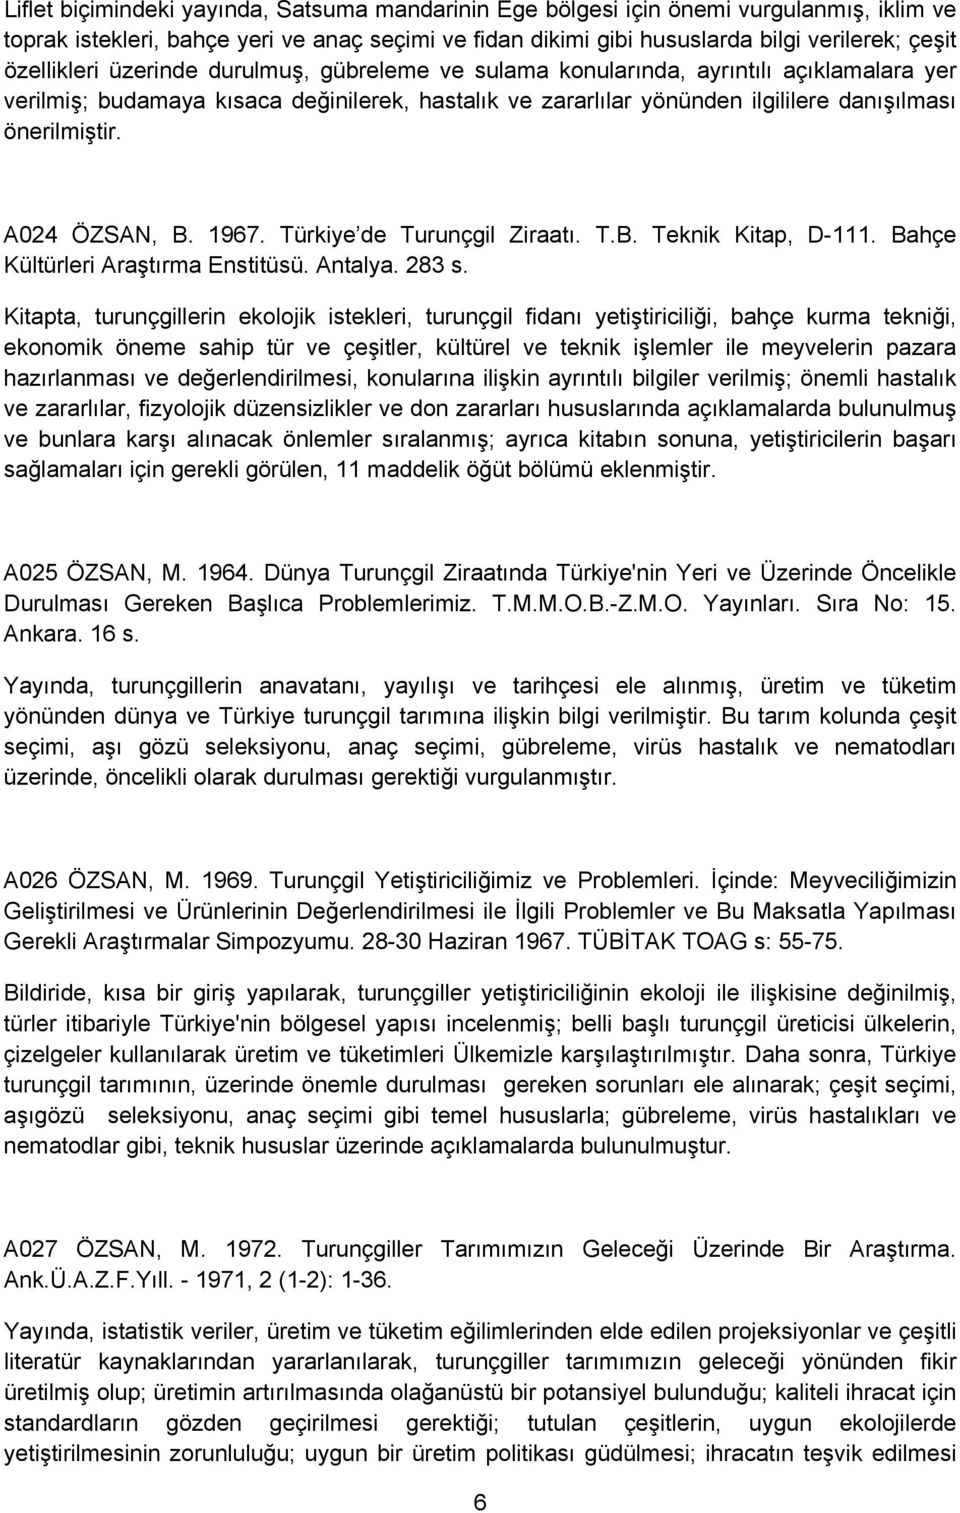 A024 ÖZSAN, B. 1967. Türkiye de Turunçgil Ziraatı. T.B. Teknik Kitap, D-111. Bahçe Kültürleri Araştırma Enstitüsü. Antalya. 283 s.